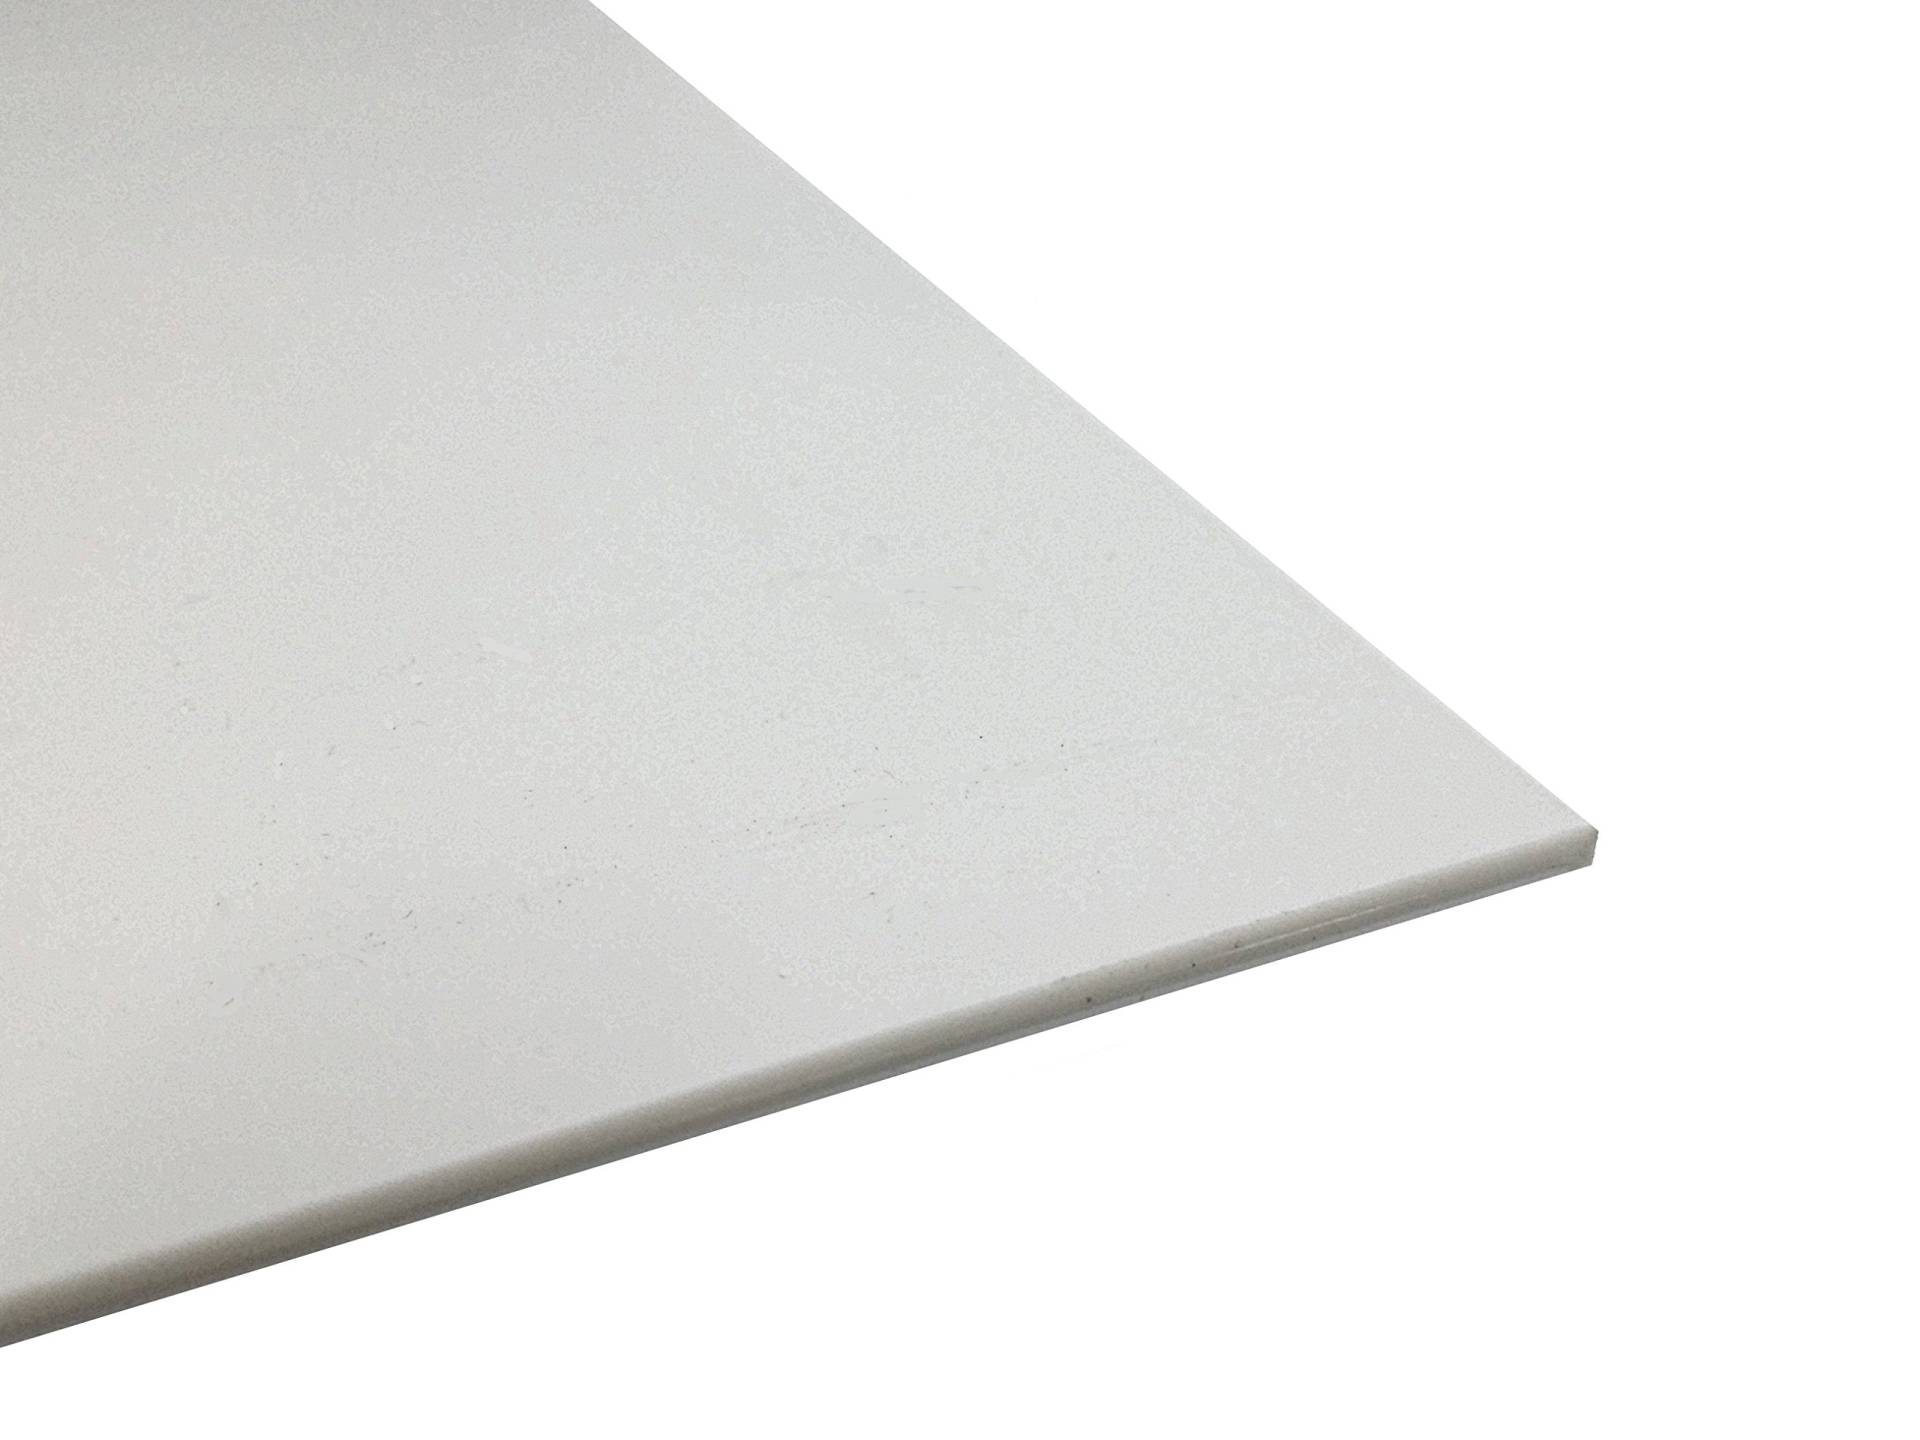 Kunststoffplatte ABS 1mm Weiß 500 x 300 mm (50x30cm) Acrylnitril-Butadien-Styrol - Made in Germany - Einseitige Schutzfolie - Top Qualität - 1 Stück von az-reptec